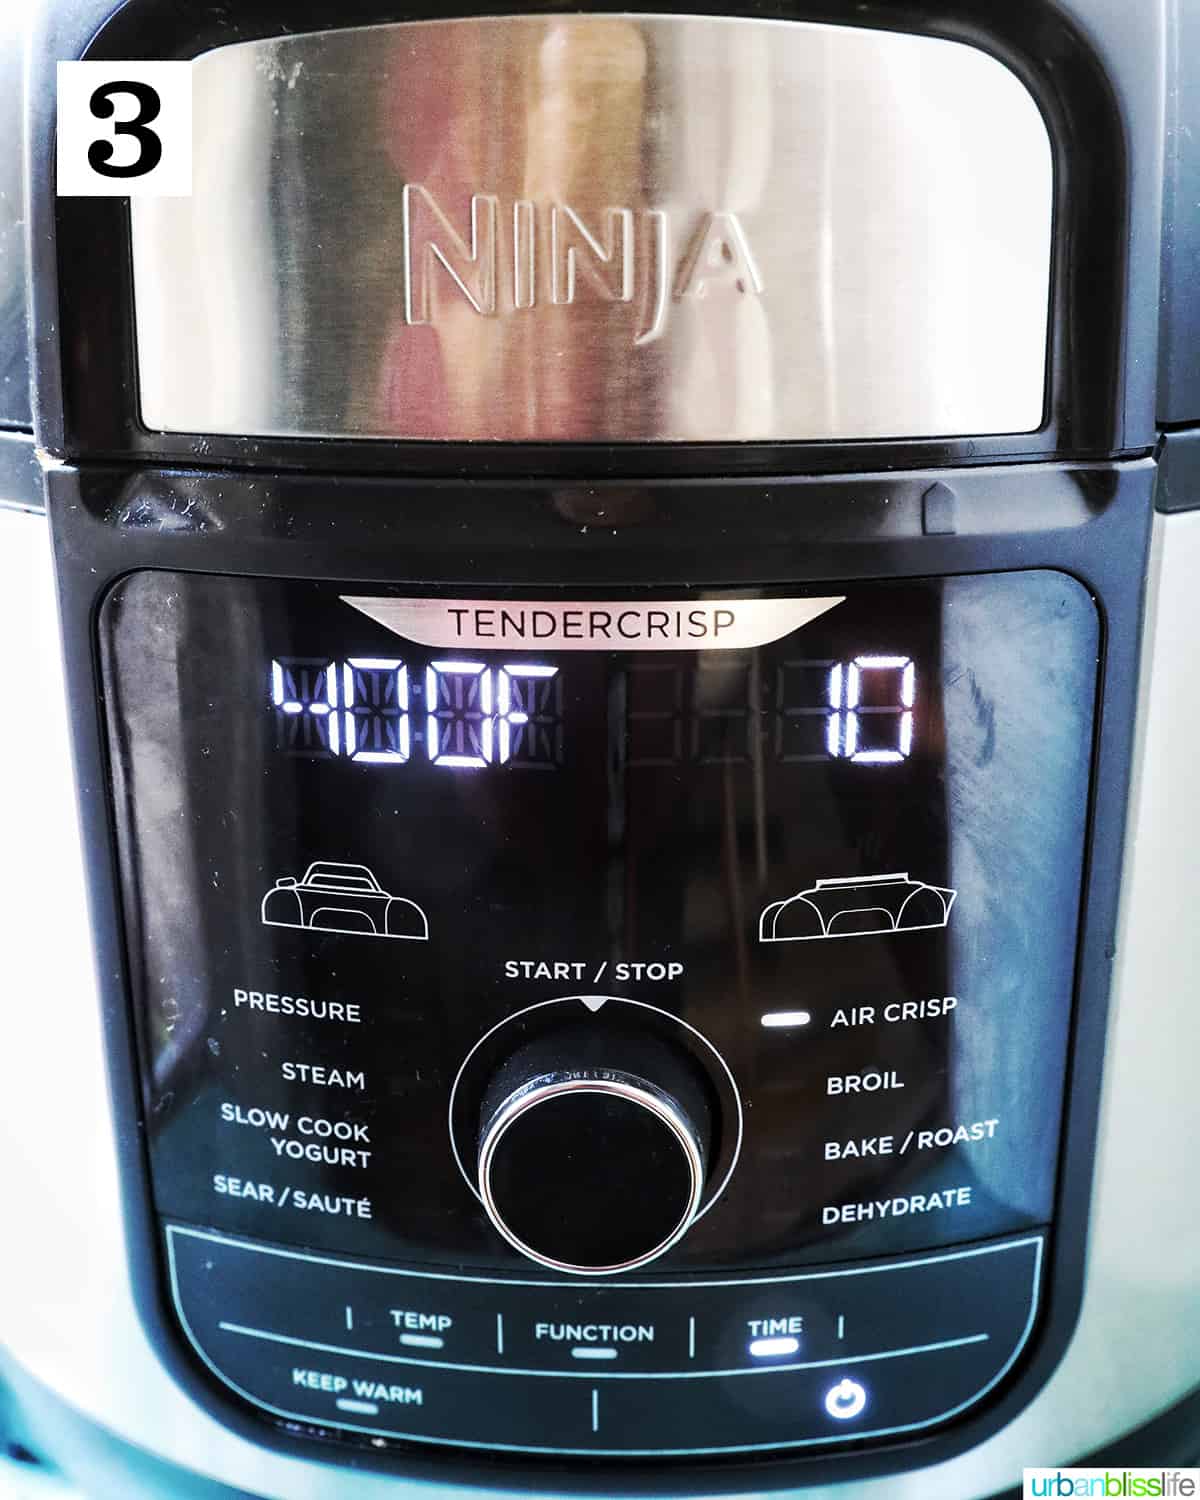 ninja foodi set to air fry at 400 degrees for 10 minutes.